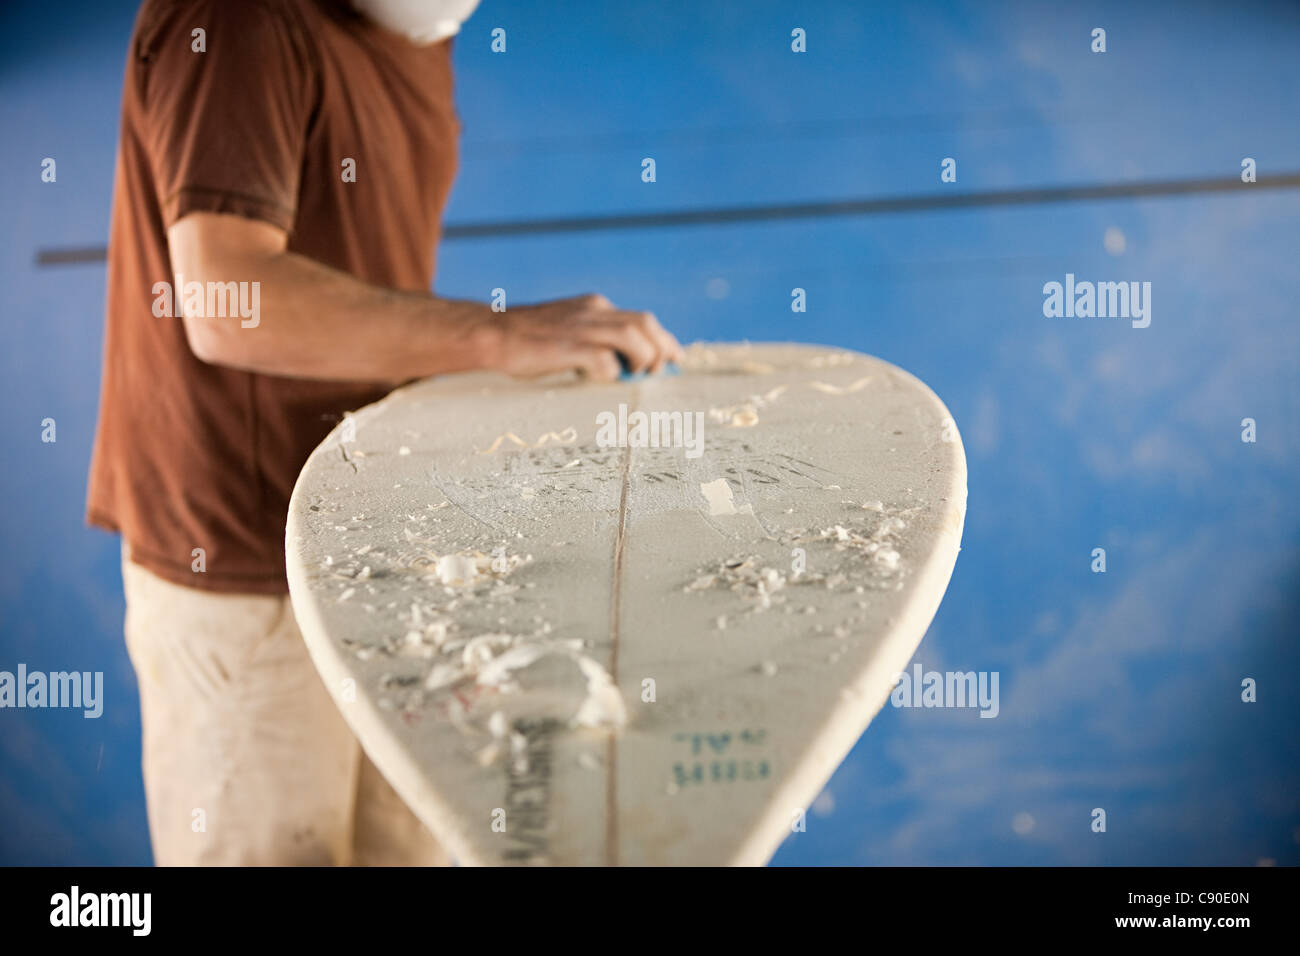 Man waxing surfboard Stock Photo